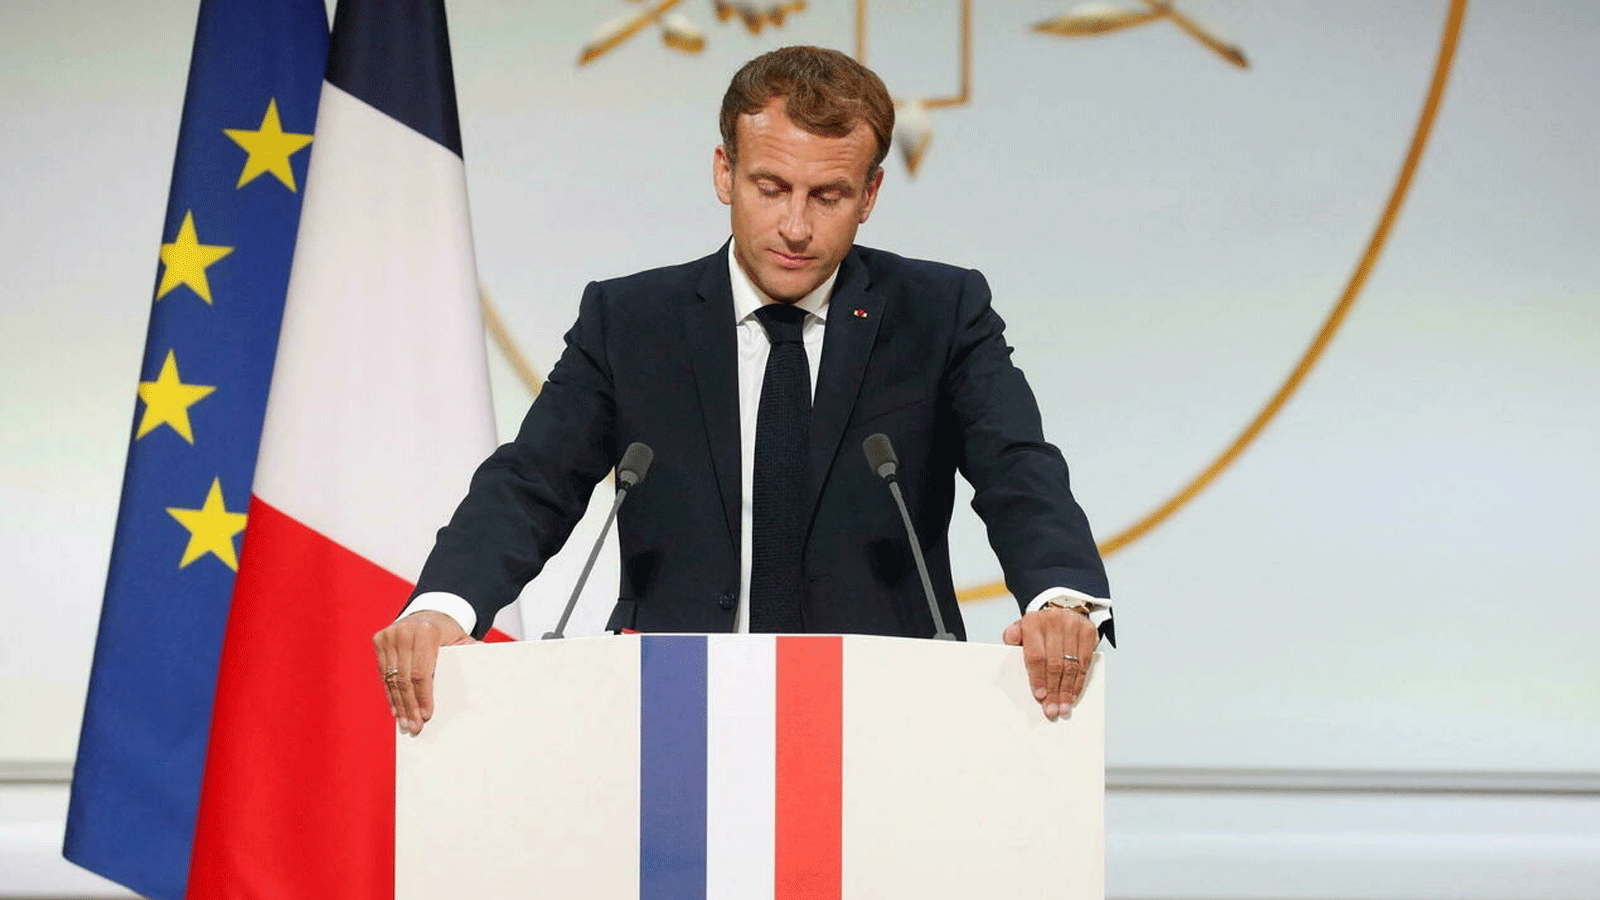  الرئيس الفرنسي إيمانويل ماكرون يُلقي خطابًا خلال الحفل تخليدًا لذكرى الحركيين الجزائريين الذين ساعدوا الجيش الفرنسي في حرب الاستقلال الجزائرية، في قصر الإليزيه/ باريس. 20 أيلول/ سبتمبر 2021.